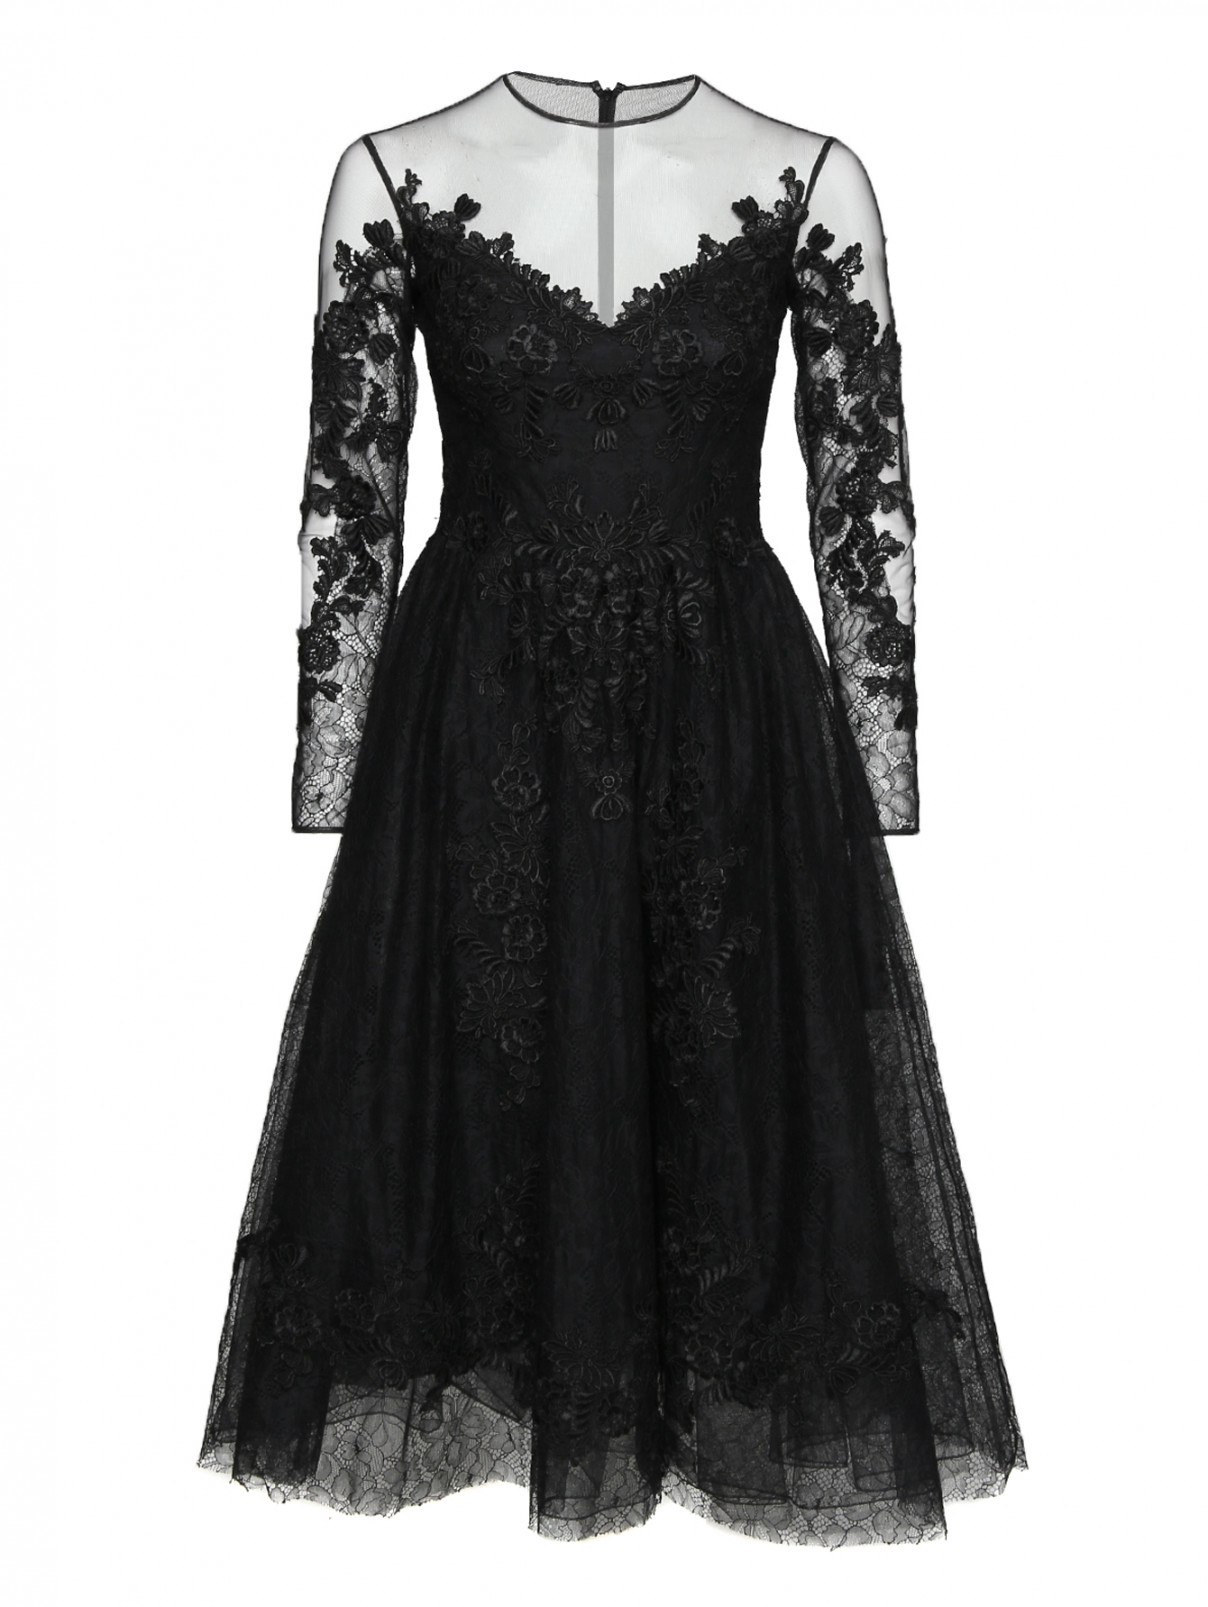 Платье-миди из кружева с аппликацией Zuhair Murad  –  Общий вид  – Цвет:  Черный